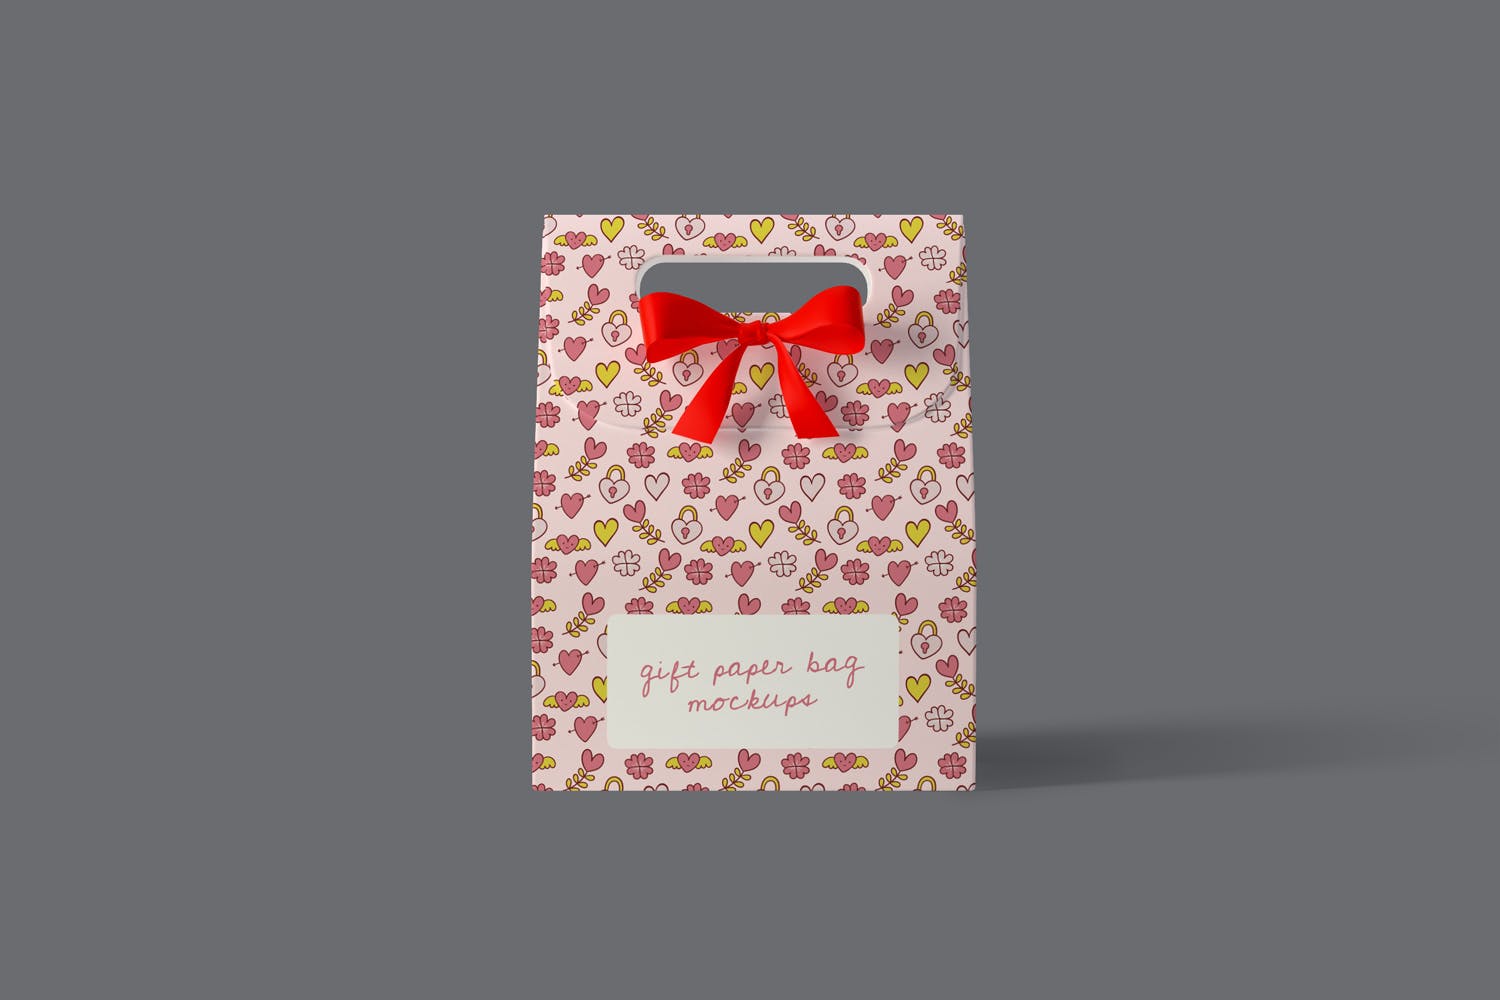 礼品纸袋外观设计图第一素材精选模板 Gift Paper Bag Mockups插图(1)